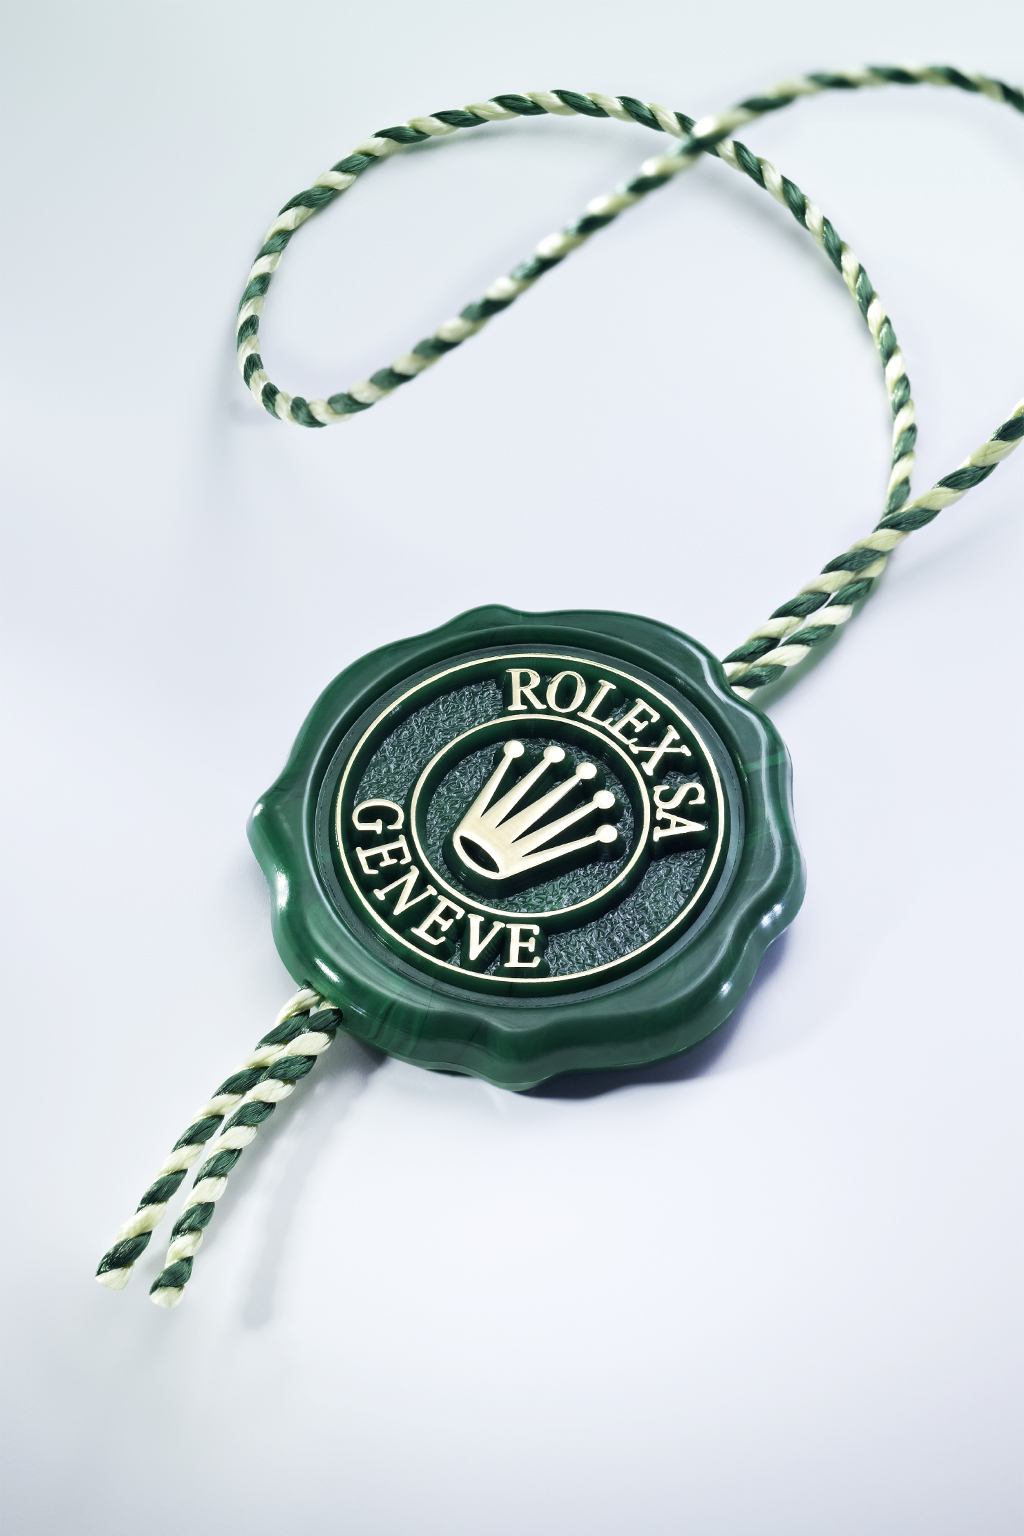 Caratteristica esclusiva CRONOMETRO SUPERLATIVO Il sigillo verde che accompagna l orologio Rolex ne certifica lo status di Cronometro Superlativo.